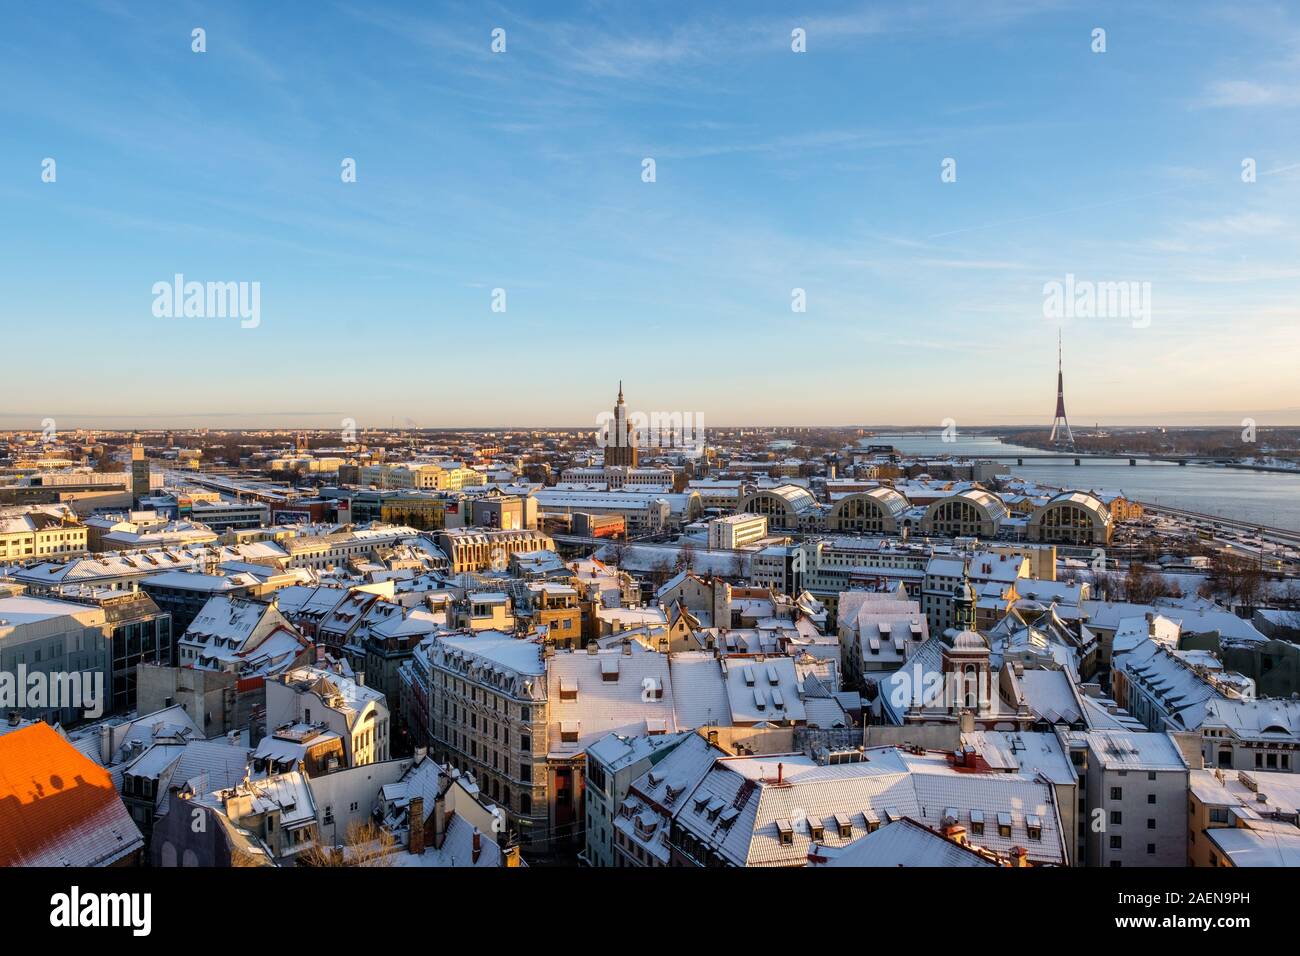 Riga/Lettland - 01. Dezember 2019: Blick auf die Altstadt von Riga aus Peter's Cathedral. Panoramablick über Riga Markt im Winter Tag. Stockfoto